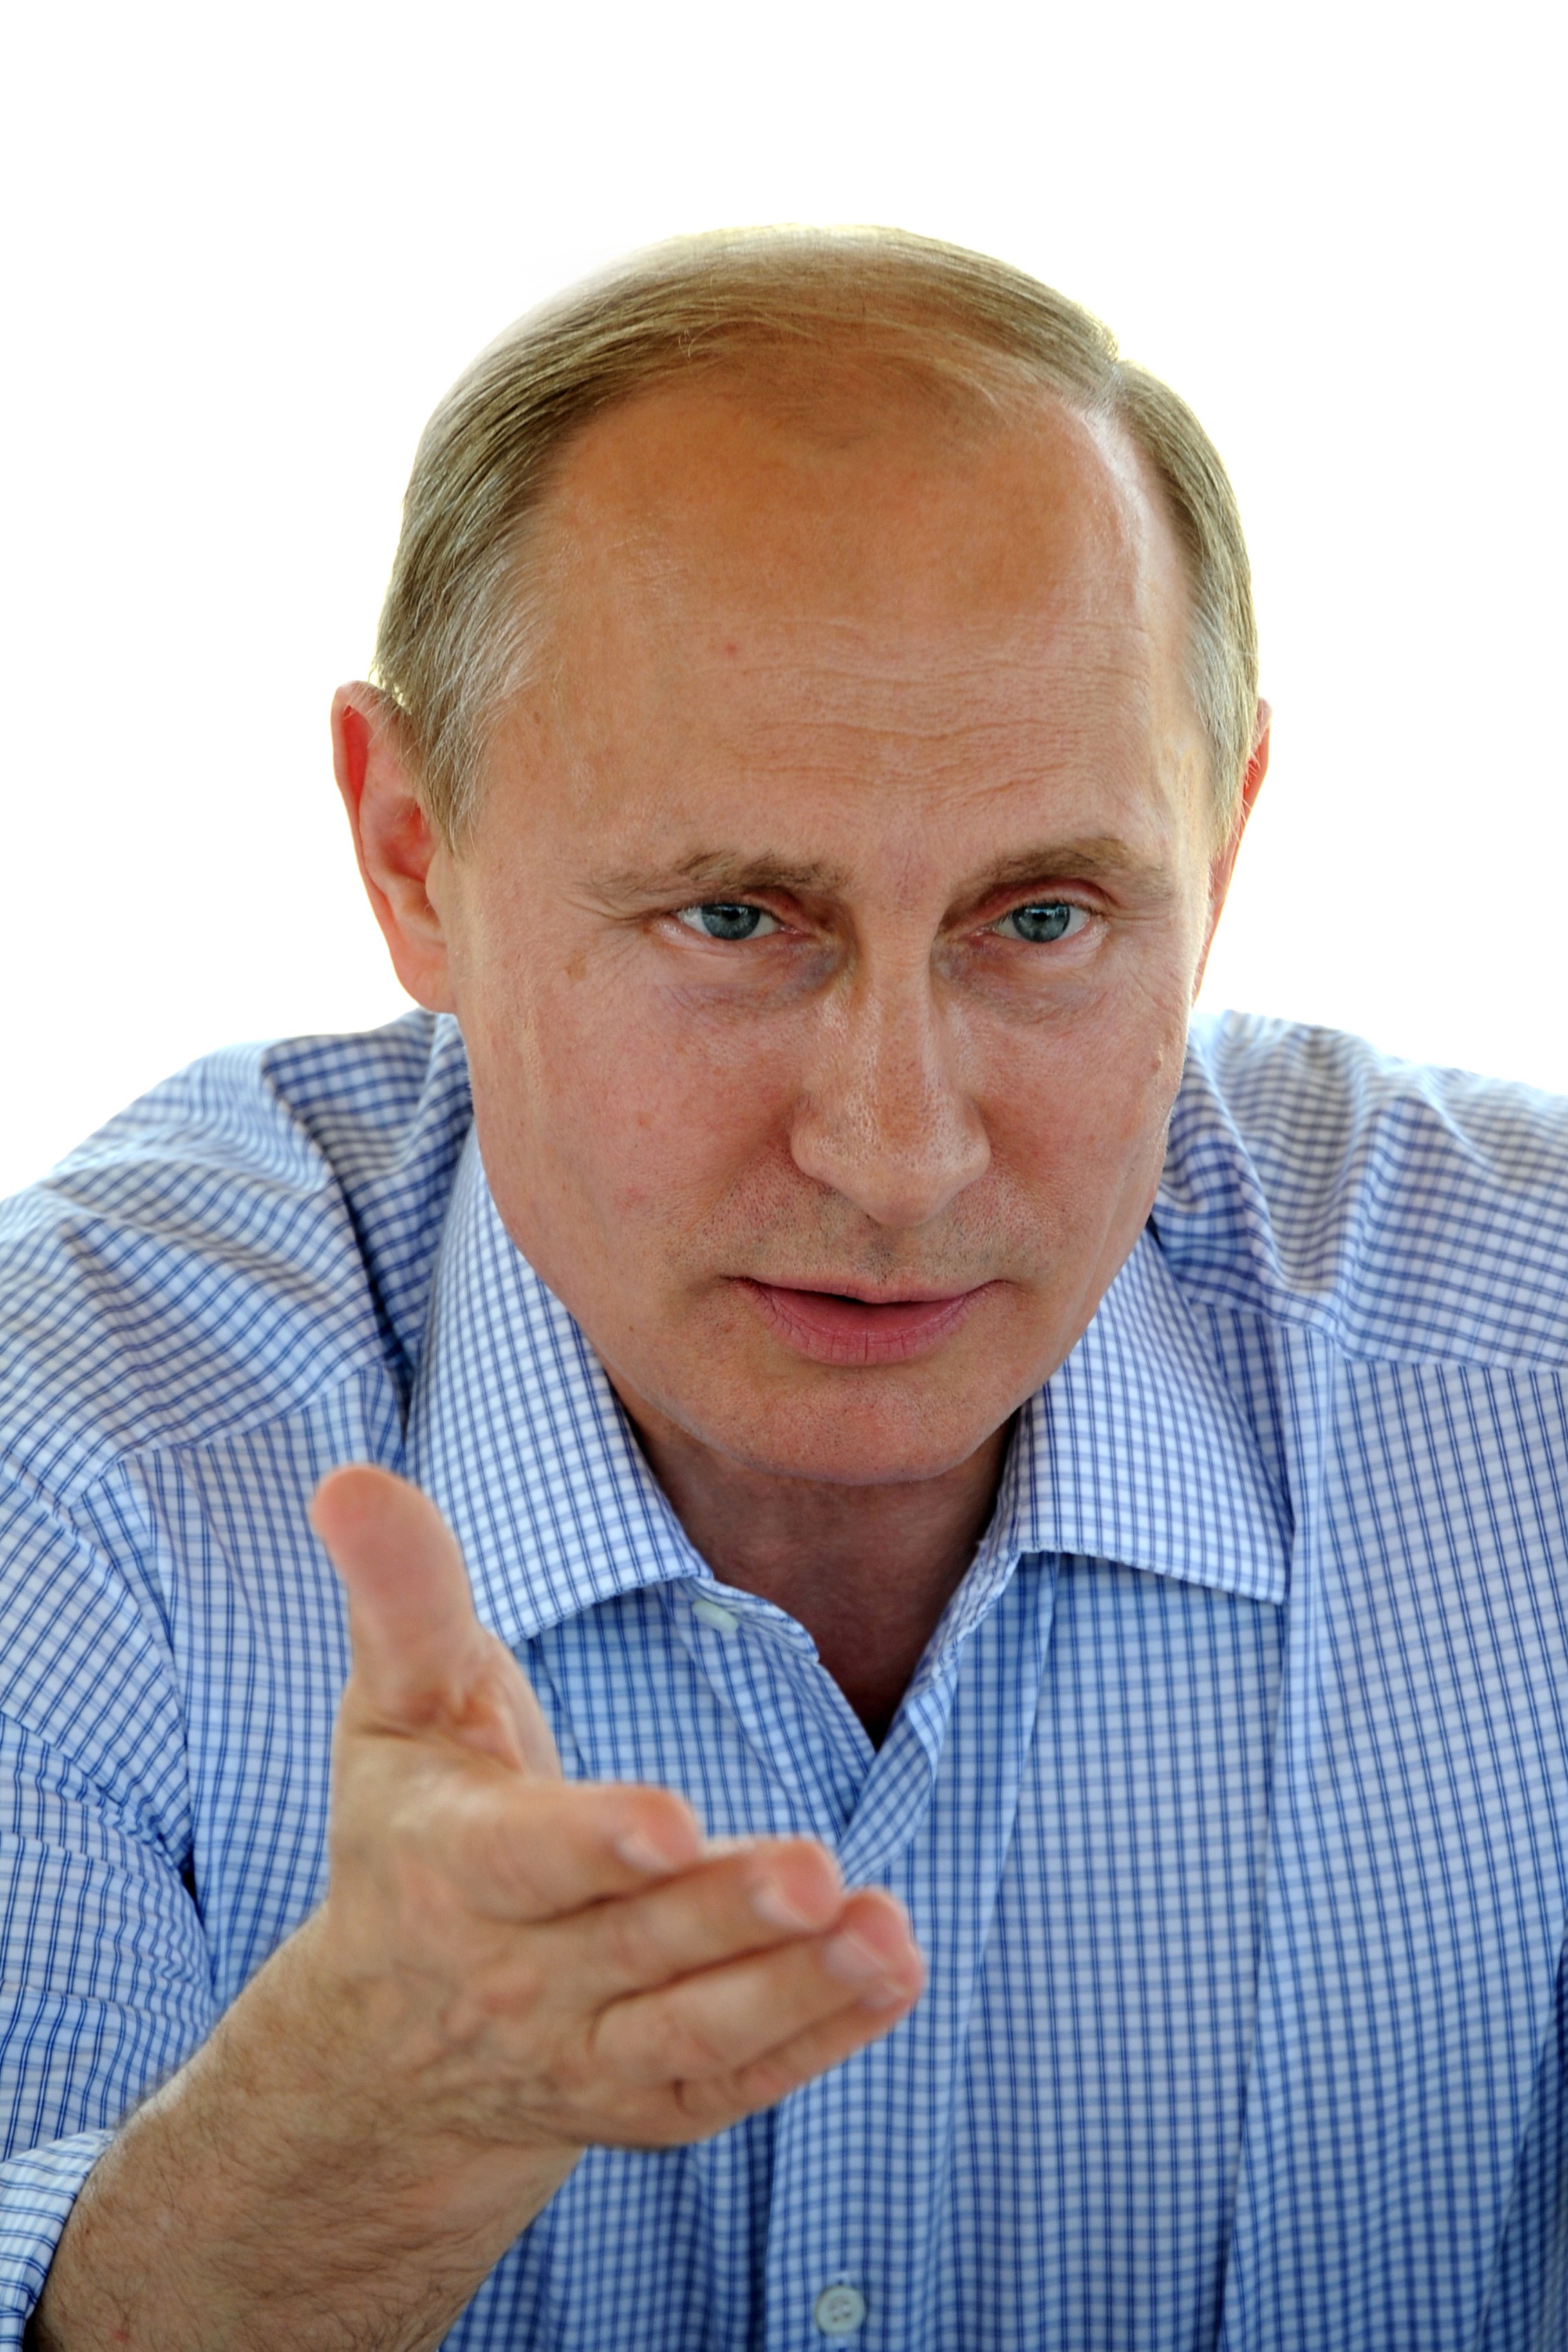 Фото Путина В Высоком Разрешении